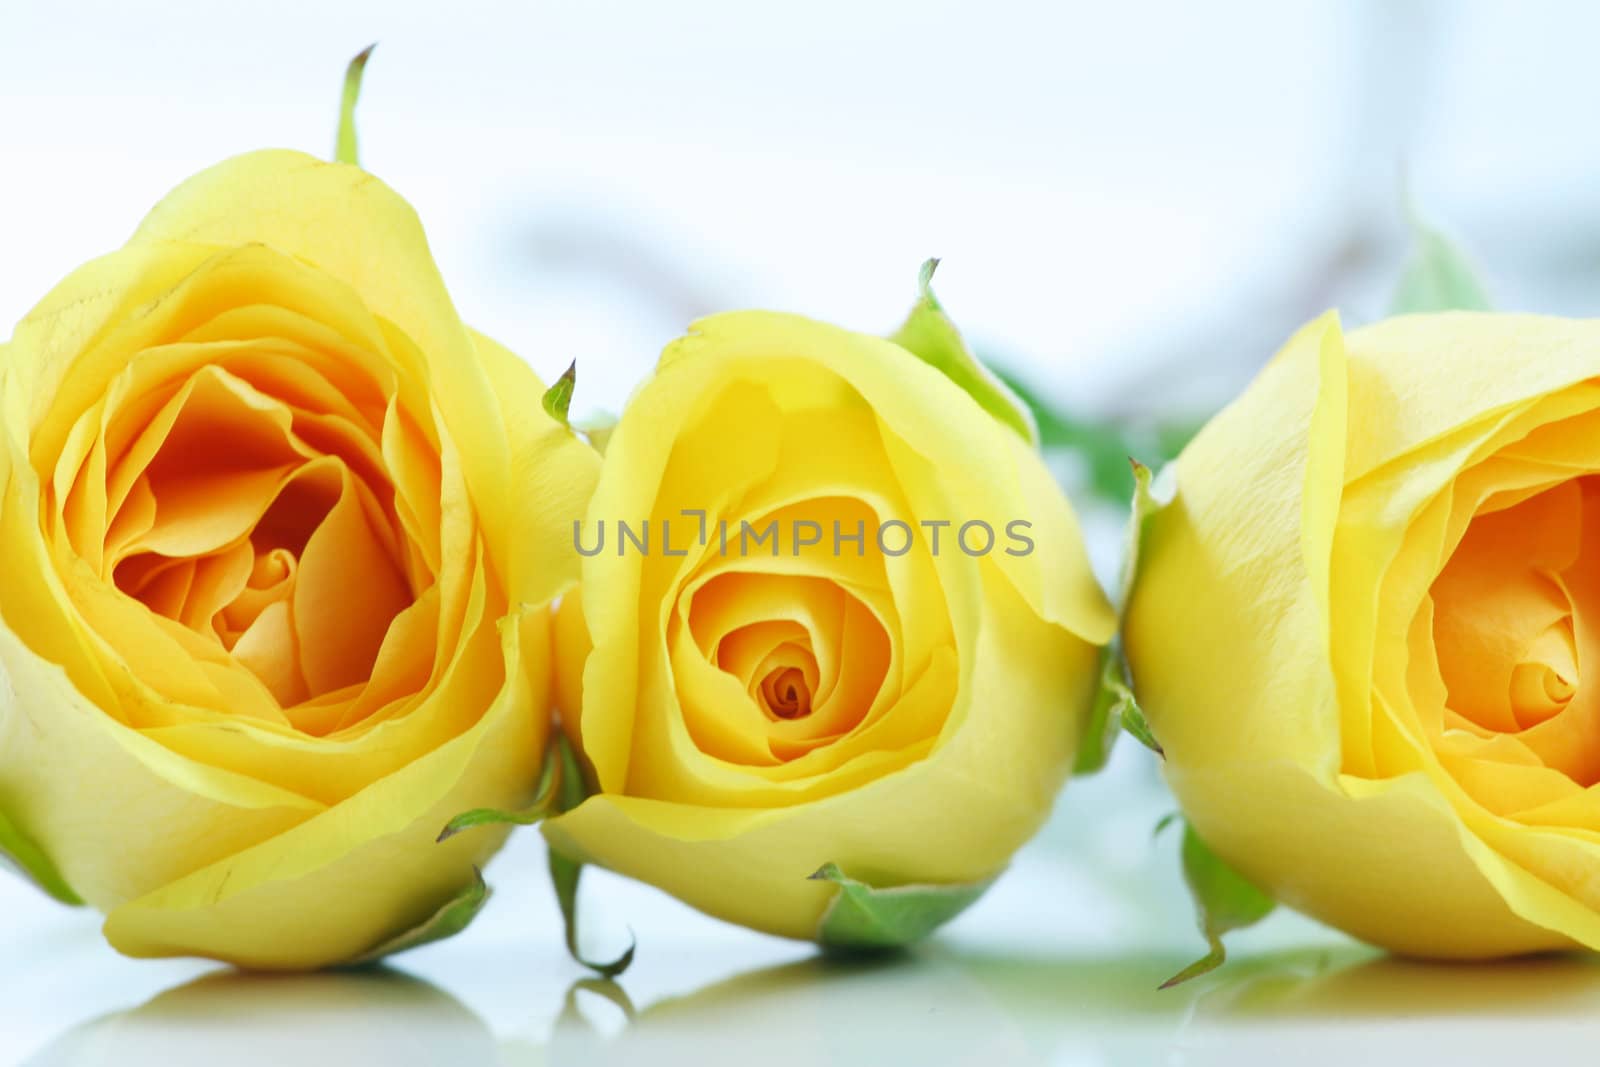 THree beautiful yellow roses  by jarenwicklund